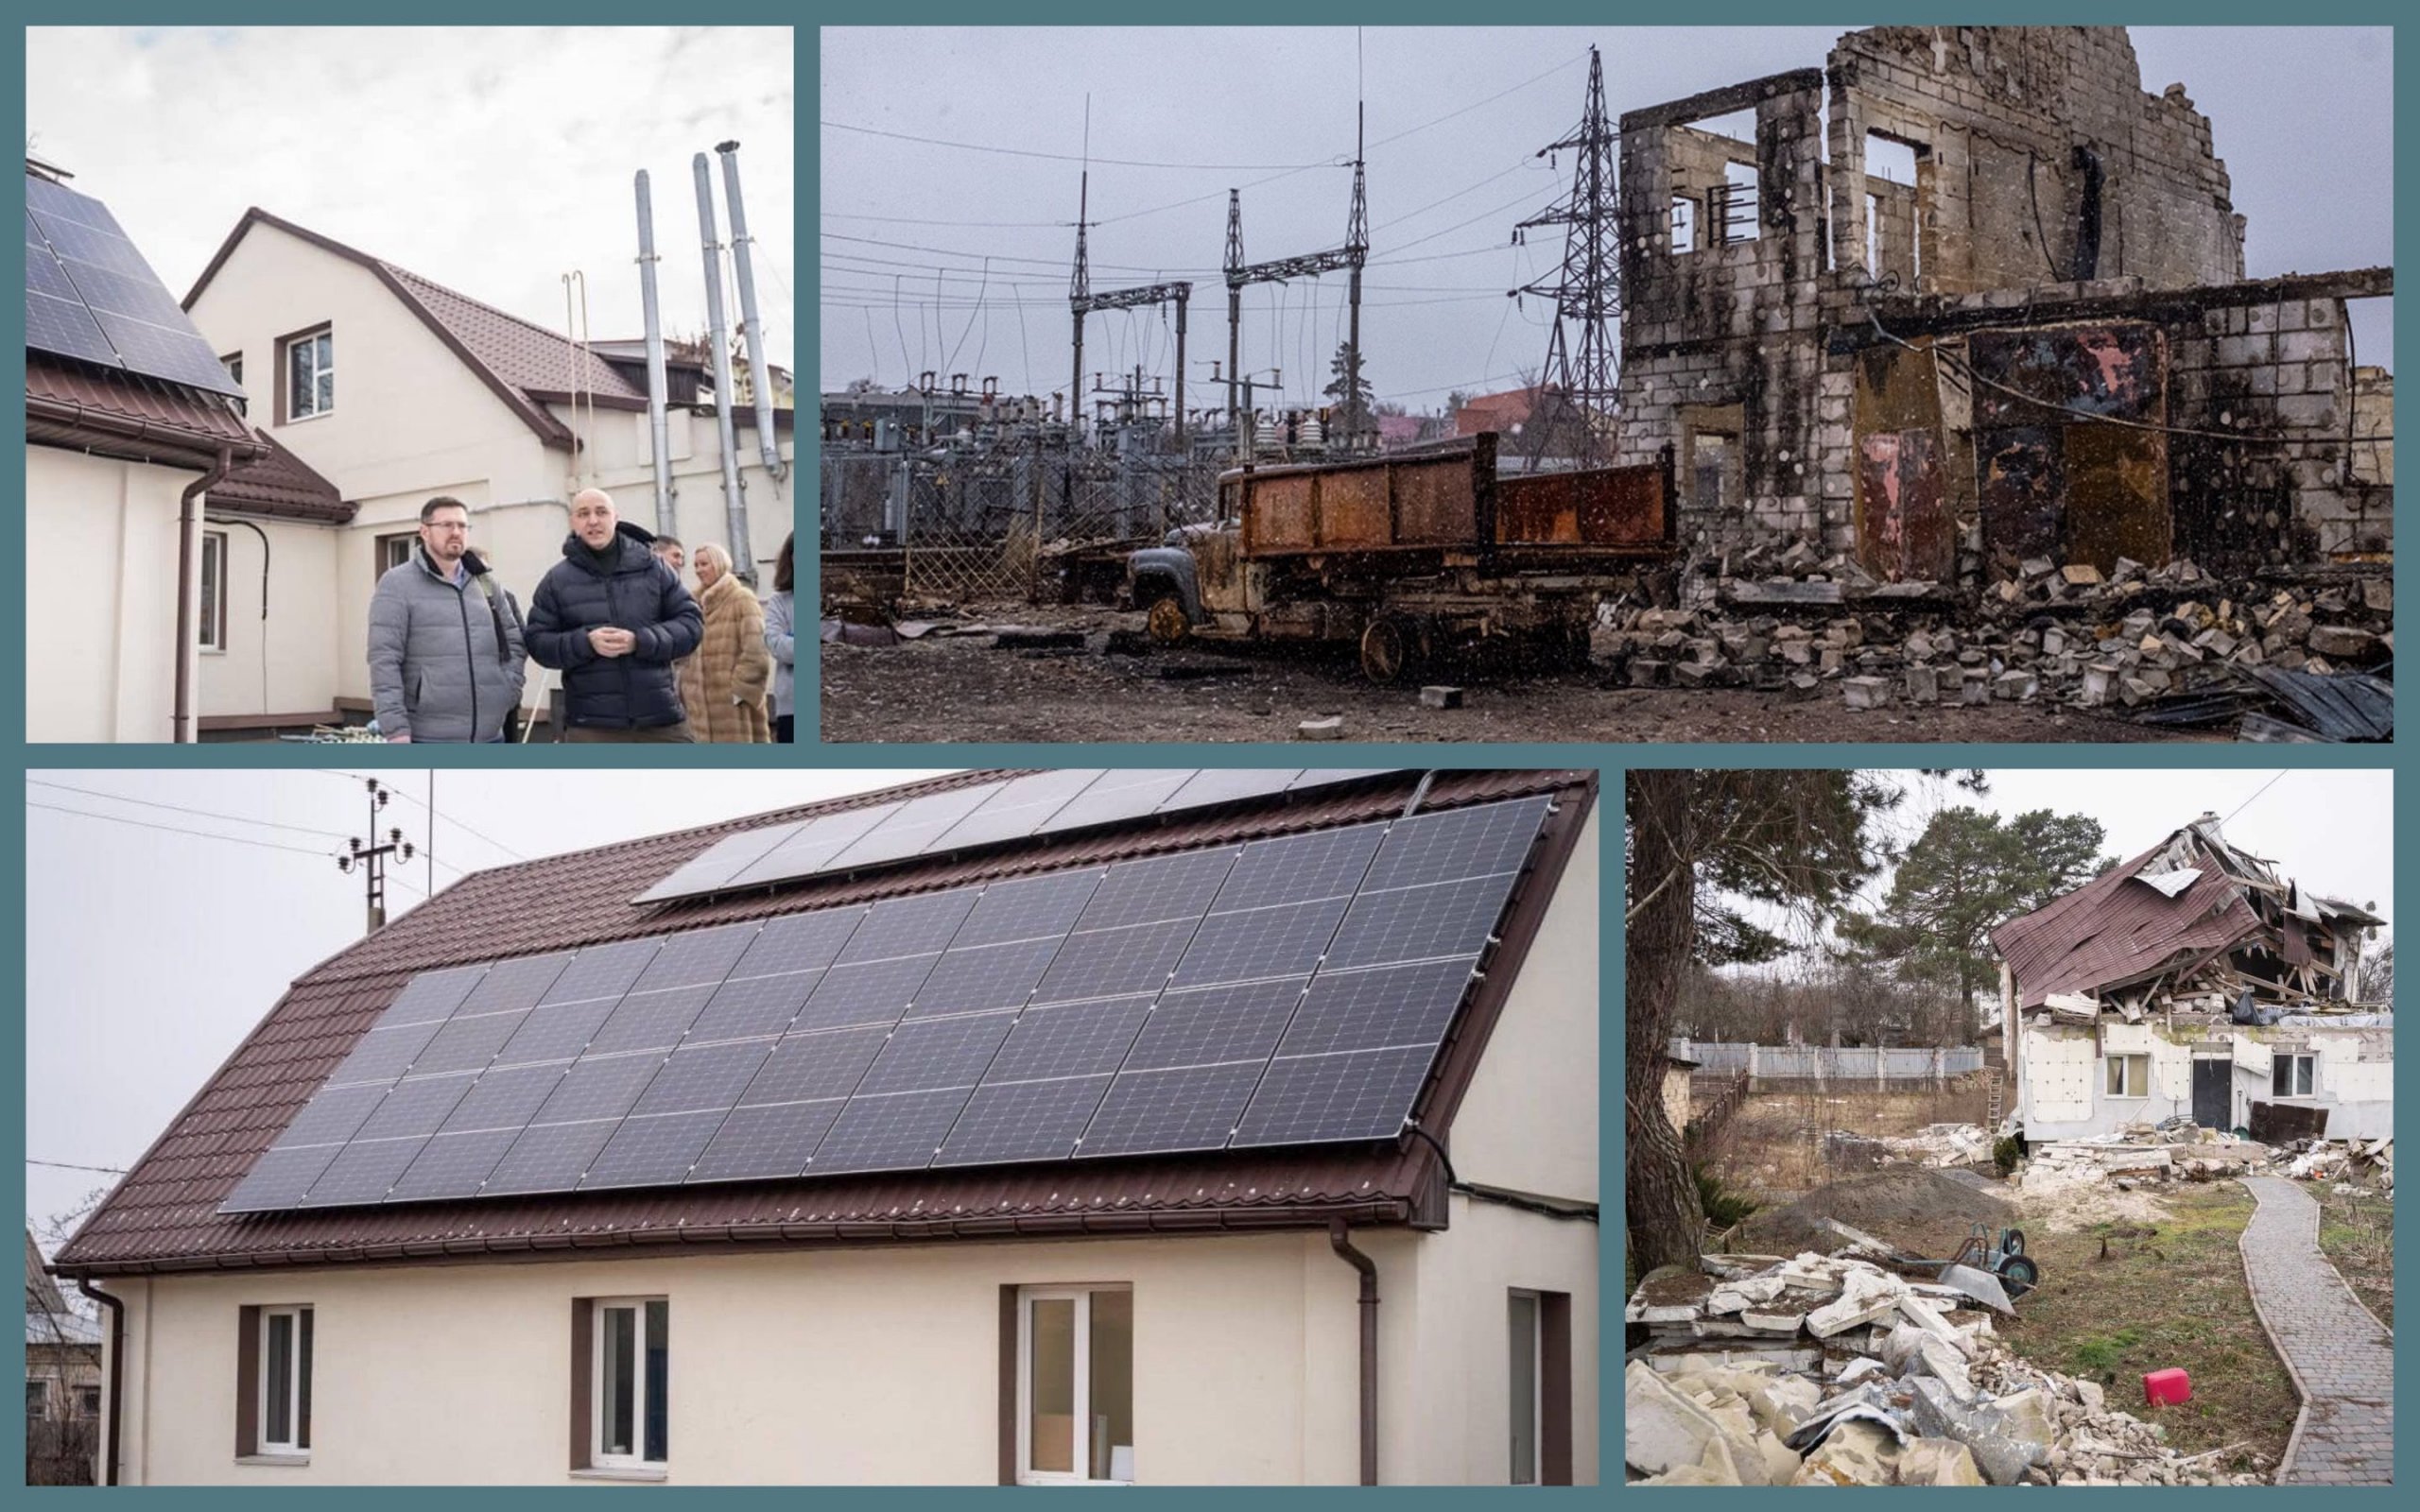 Німеччина виділить 1 мільйон євро на енергоефективне відновлення будівель в Україні: інтерв’ю з експертом «Екодії»